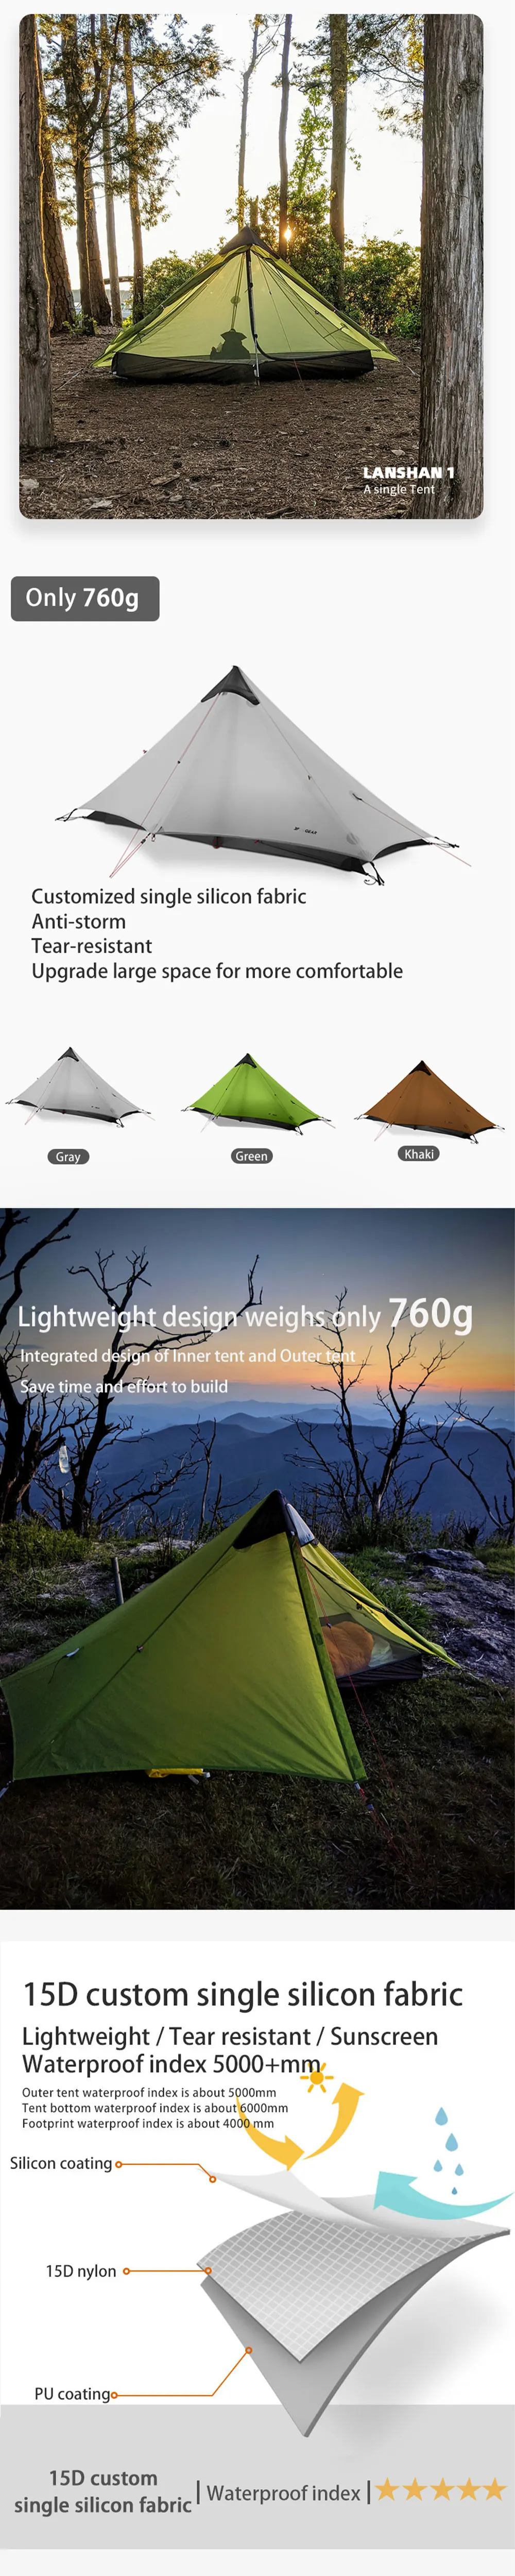 3F UL GEAR Lanshan 1 Ultralight Camping 3 Season 15D Tent 14